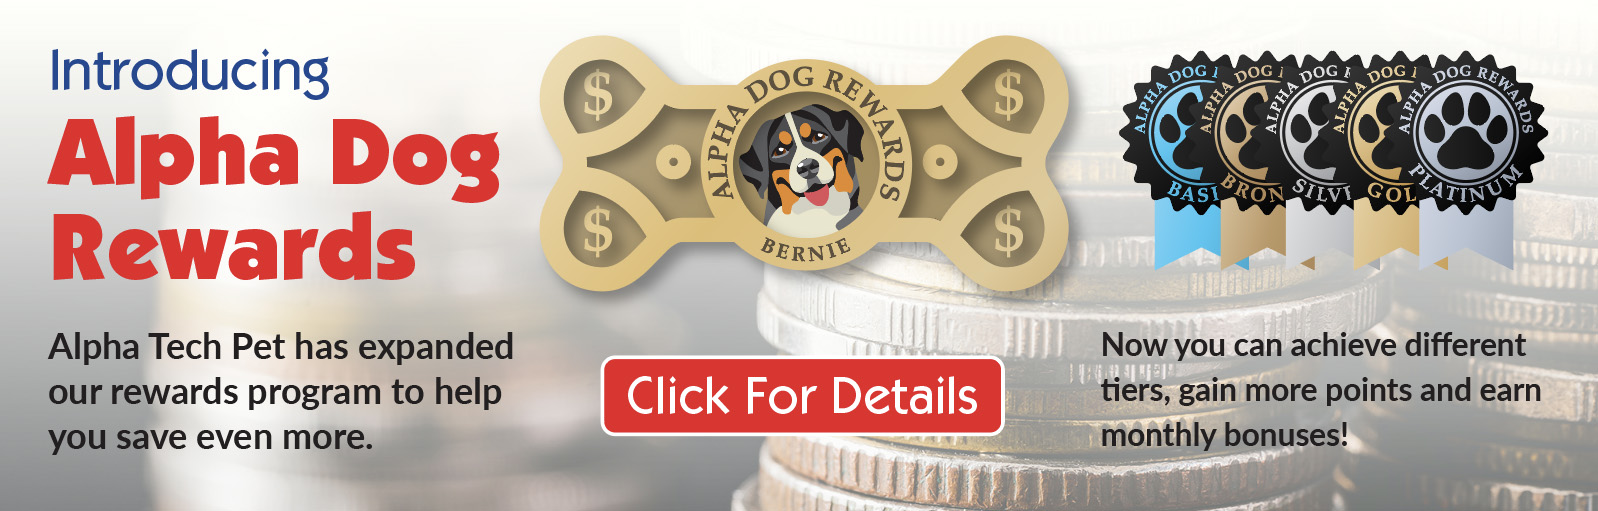 Alpha Dog Rewards Program